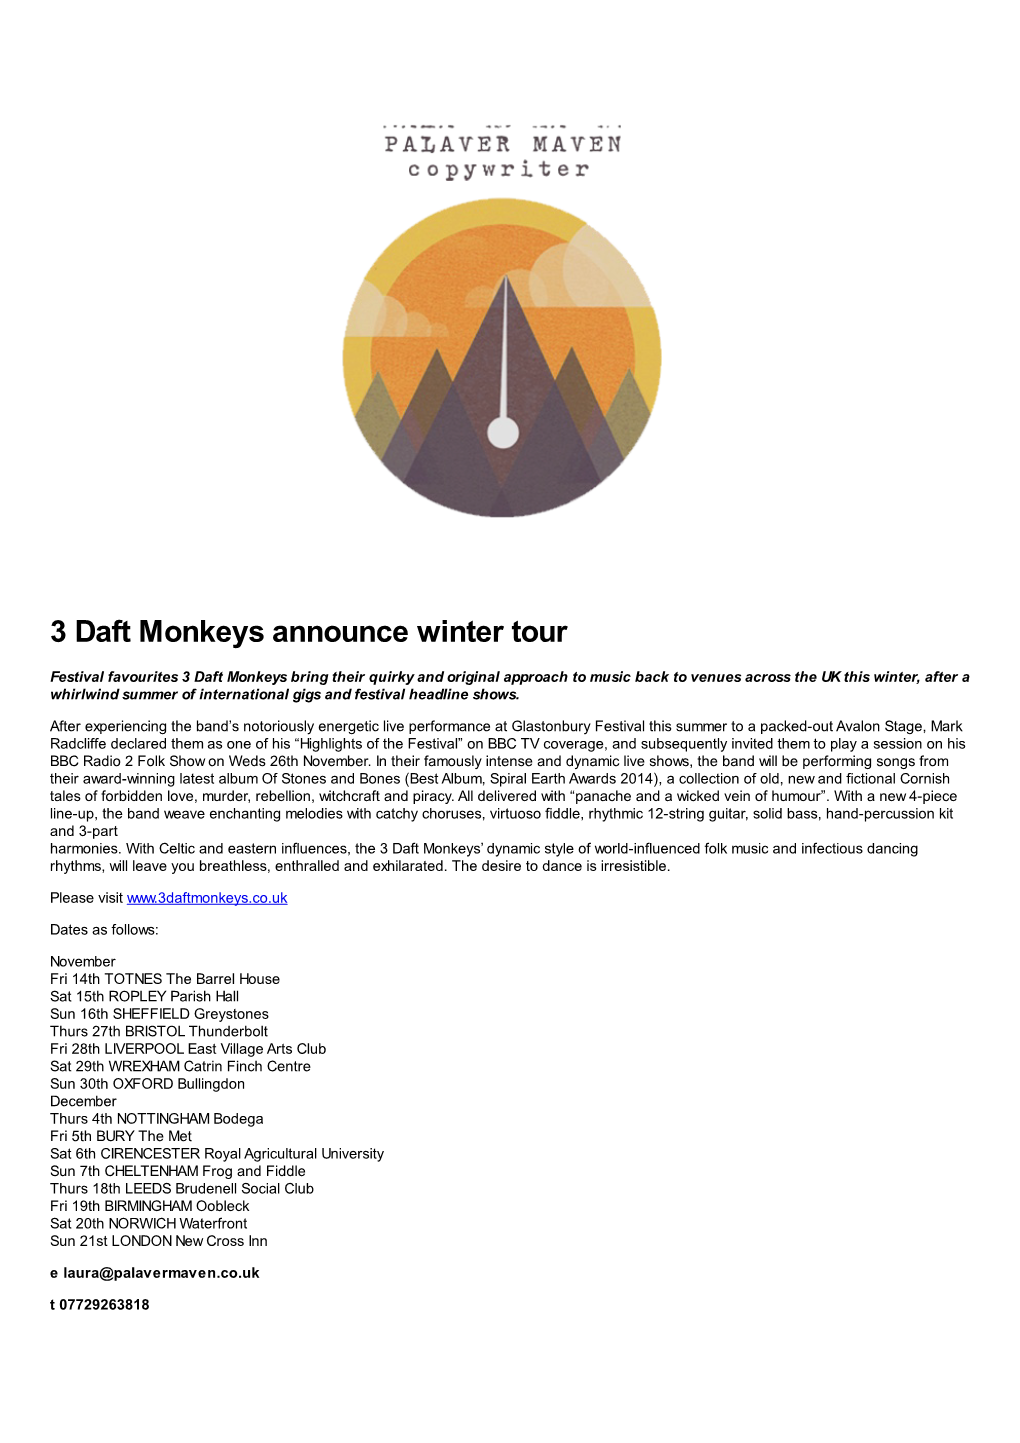 3 Daft Monkeys Announce Winter Tour